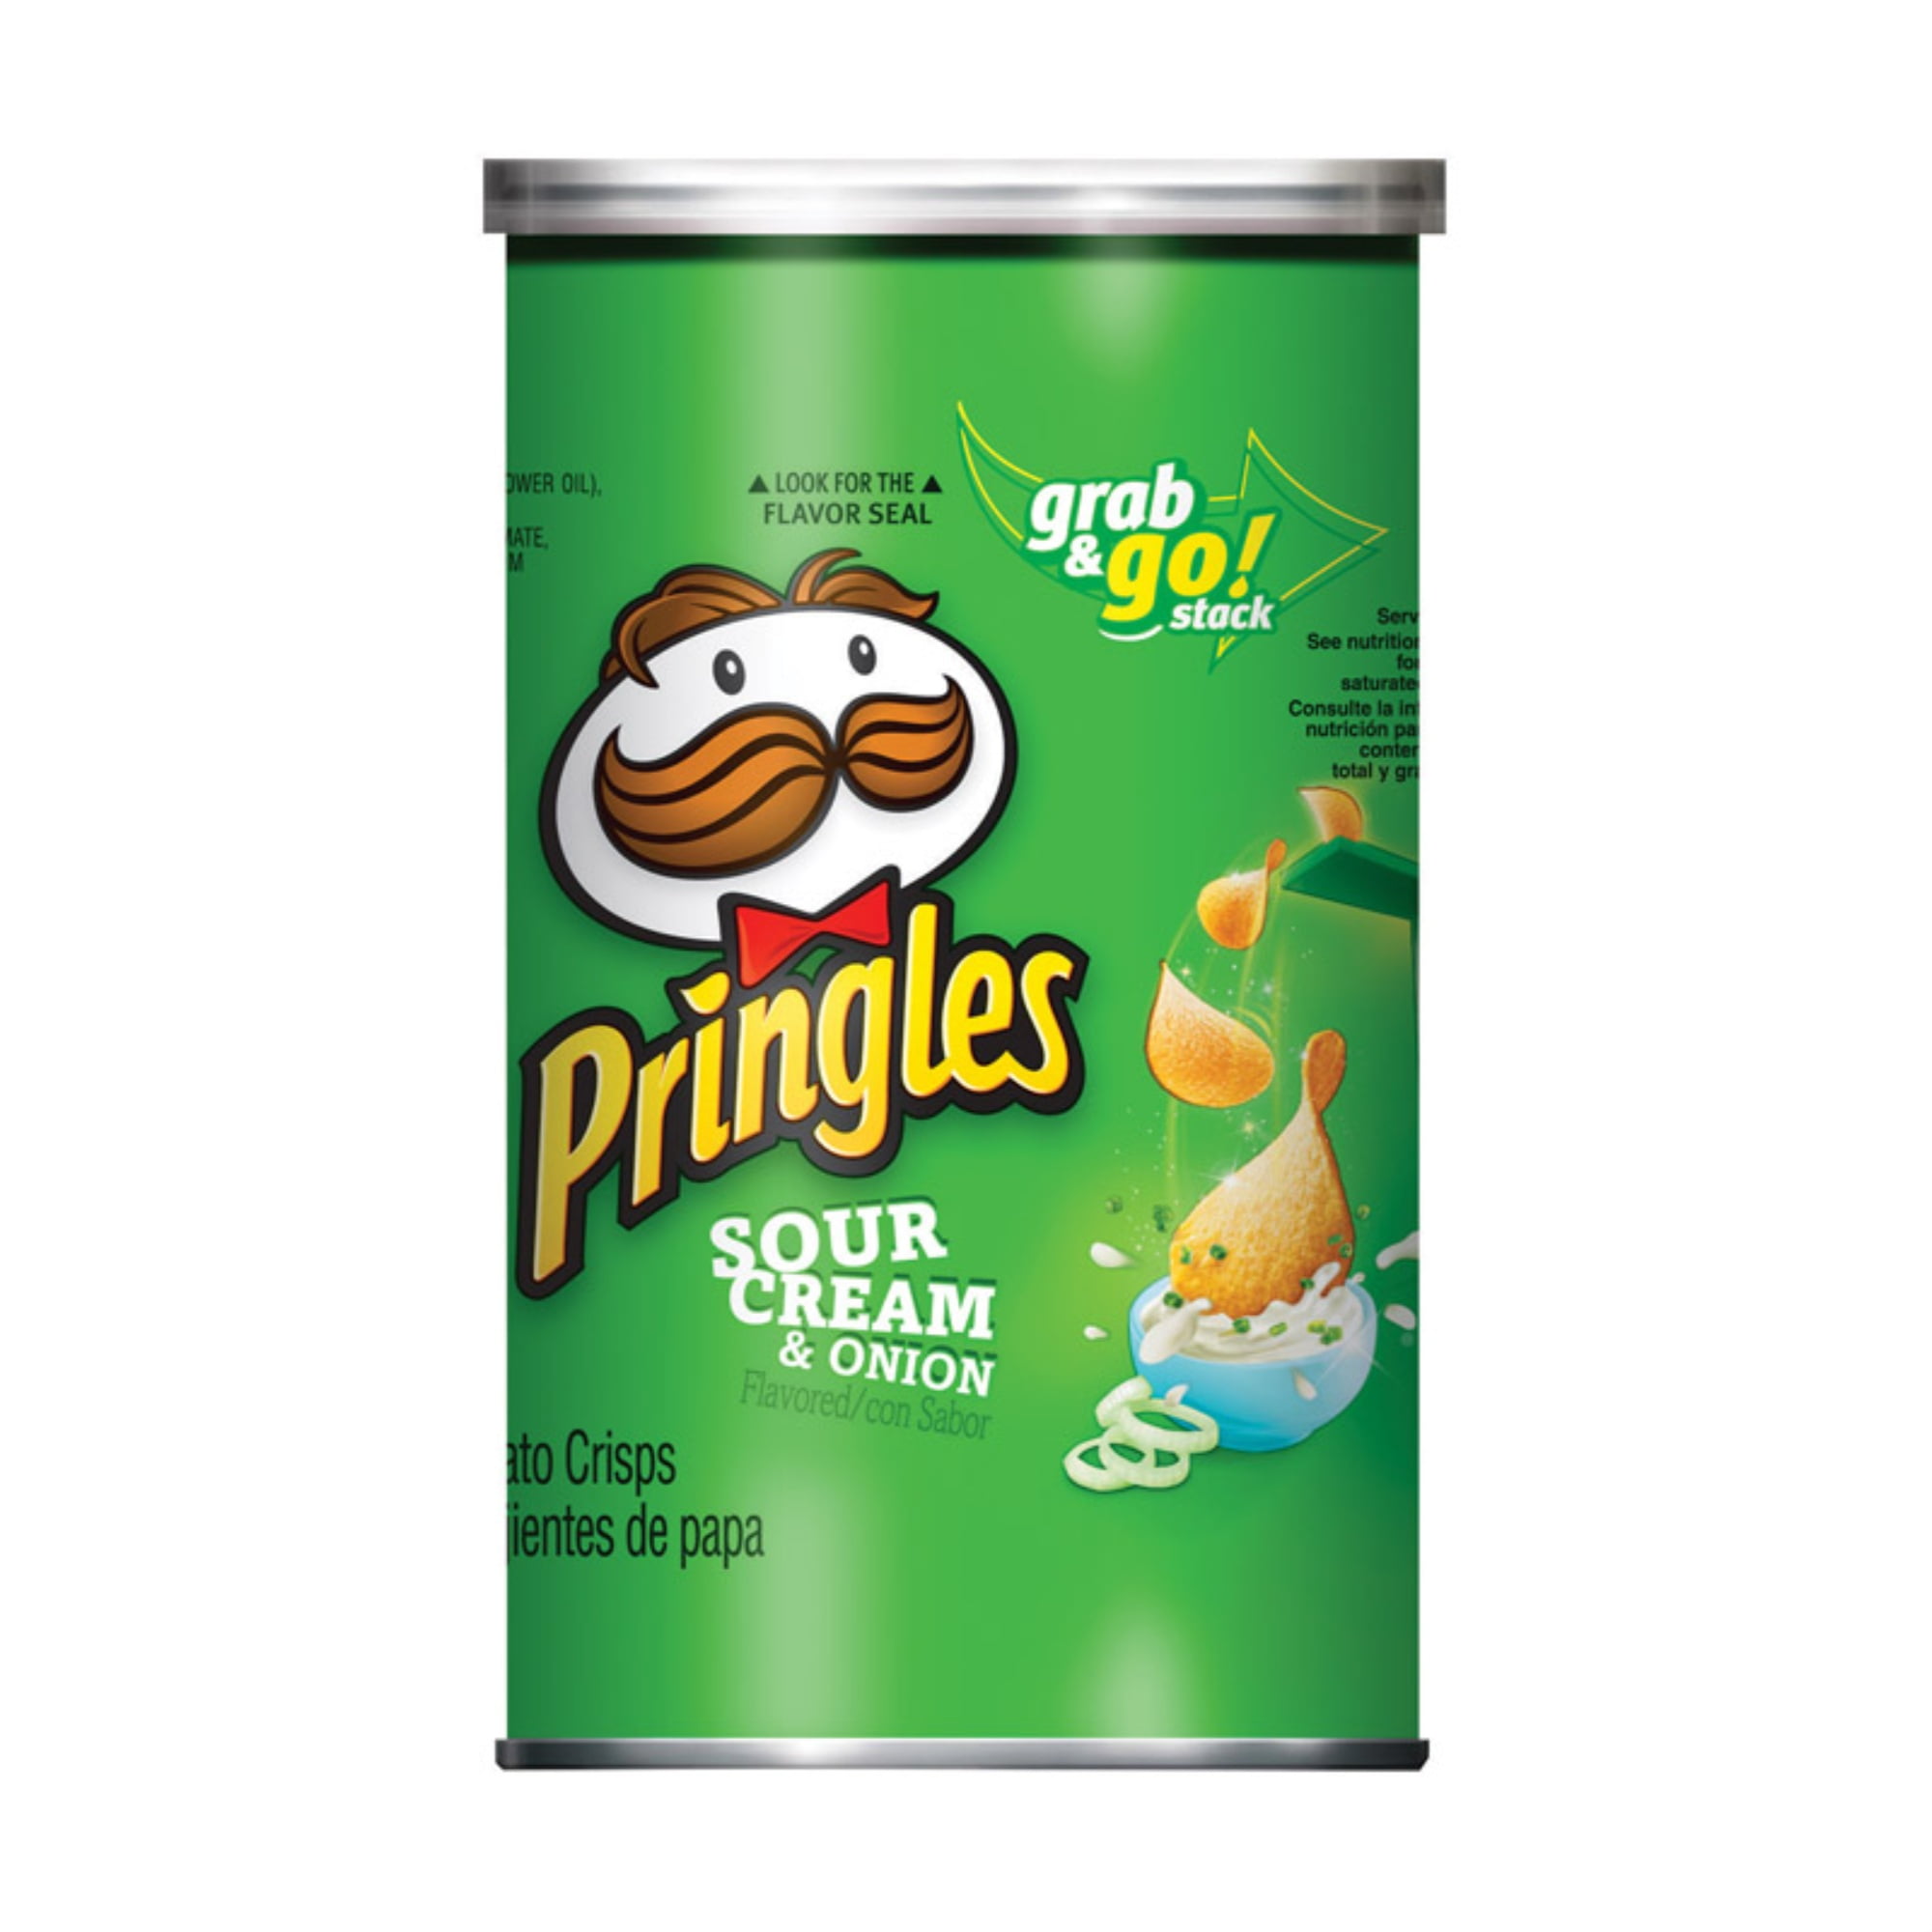 Pringles Original Potato Crisps Chips, 5.0z